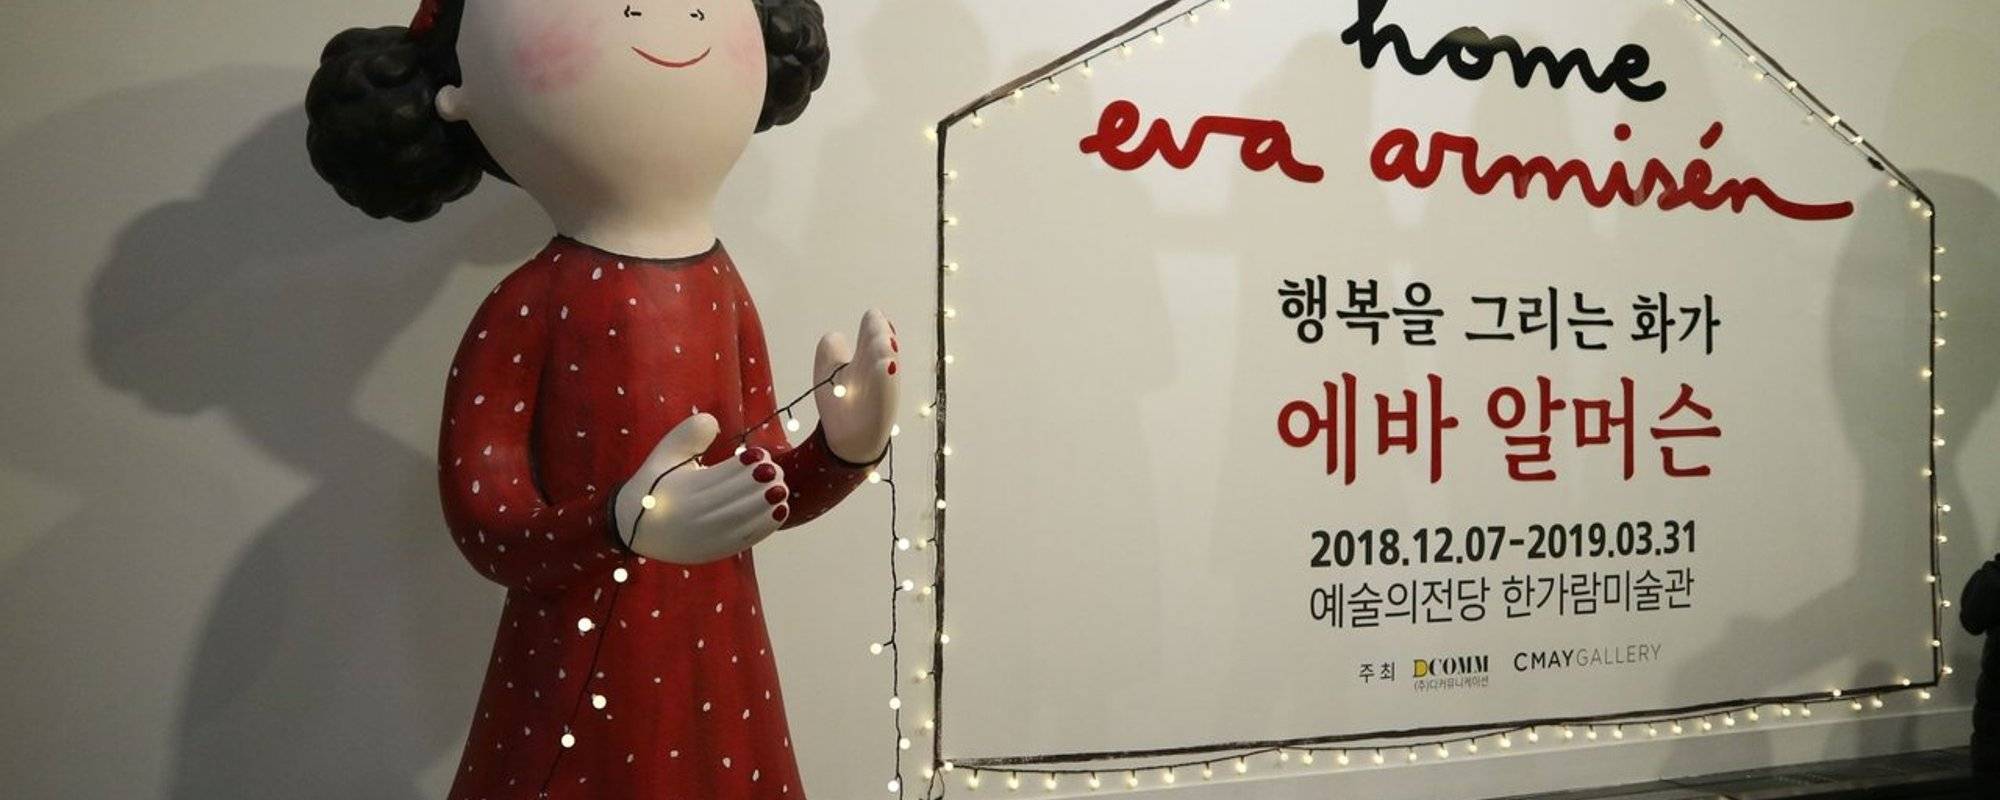 Meet Eva Armisen @Seoul Arts Center in Korea